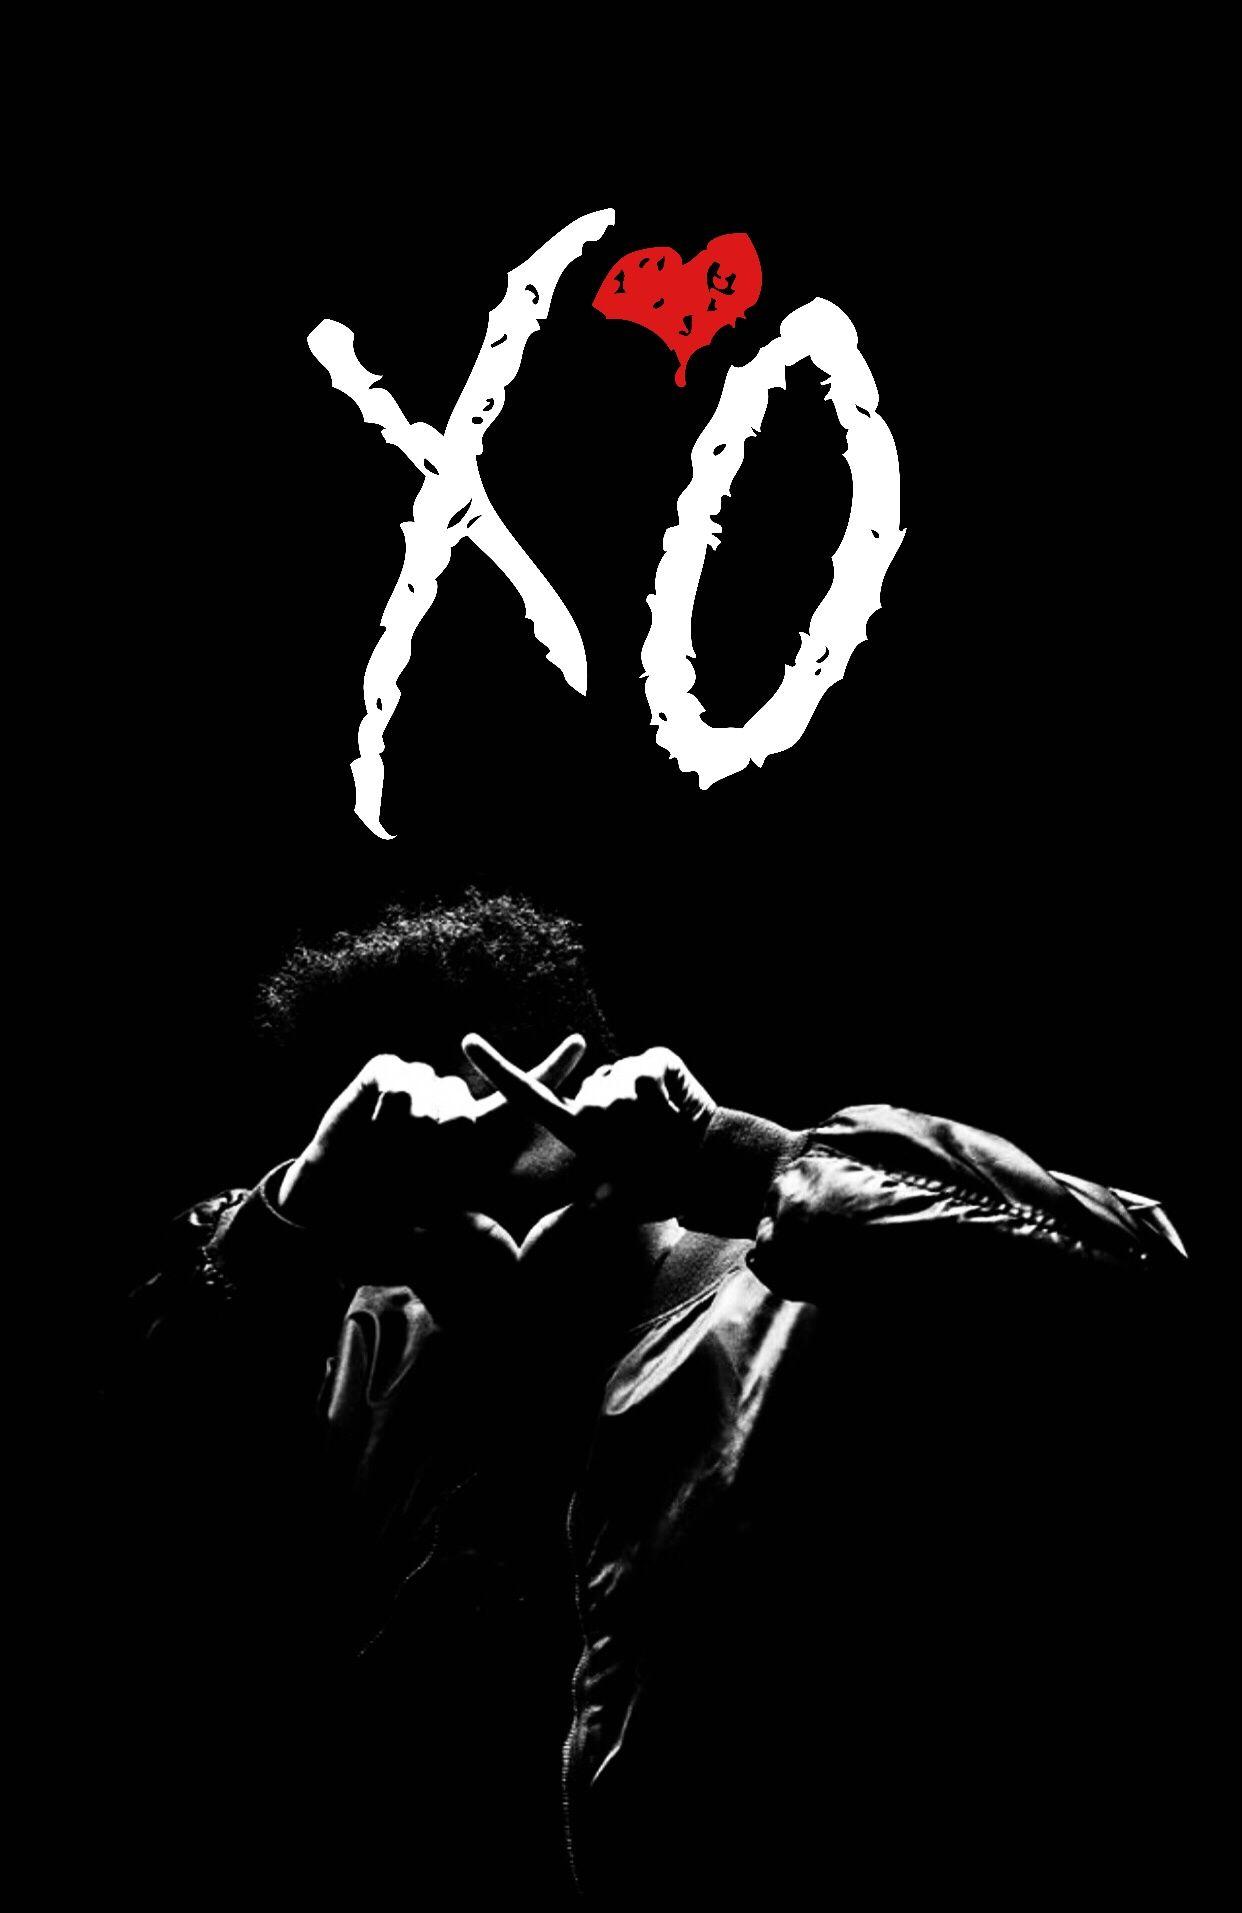 Xo Wallpapers - một bộ sưu tập hình nền độc đáo cho các tín đồ của The Weeknd. Những hình ảnh tươi sáng và sôi động với xu hướng Urban và R&B từ cư dân đô thị, tạo nên một cái nhìn hoàn toàn mới.